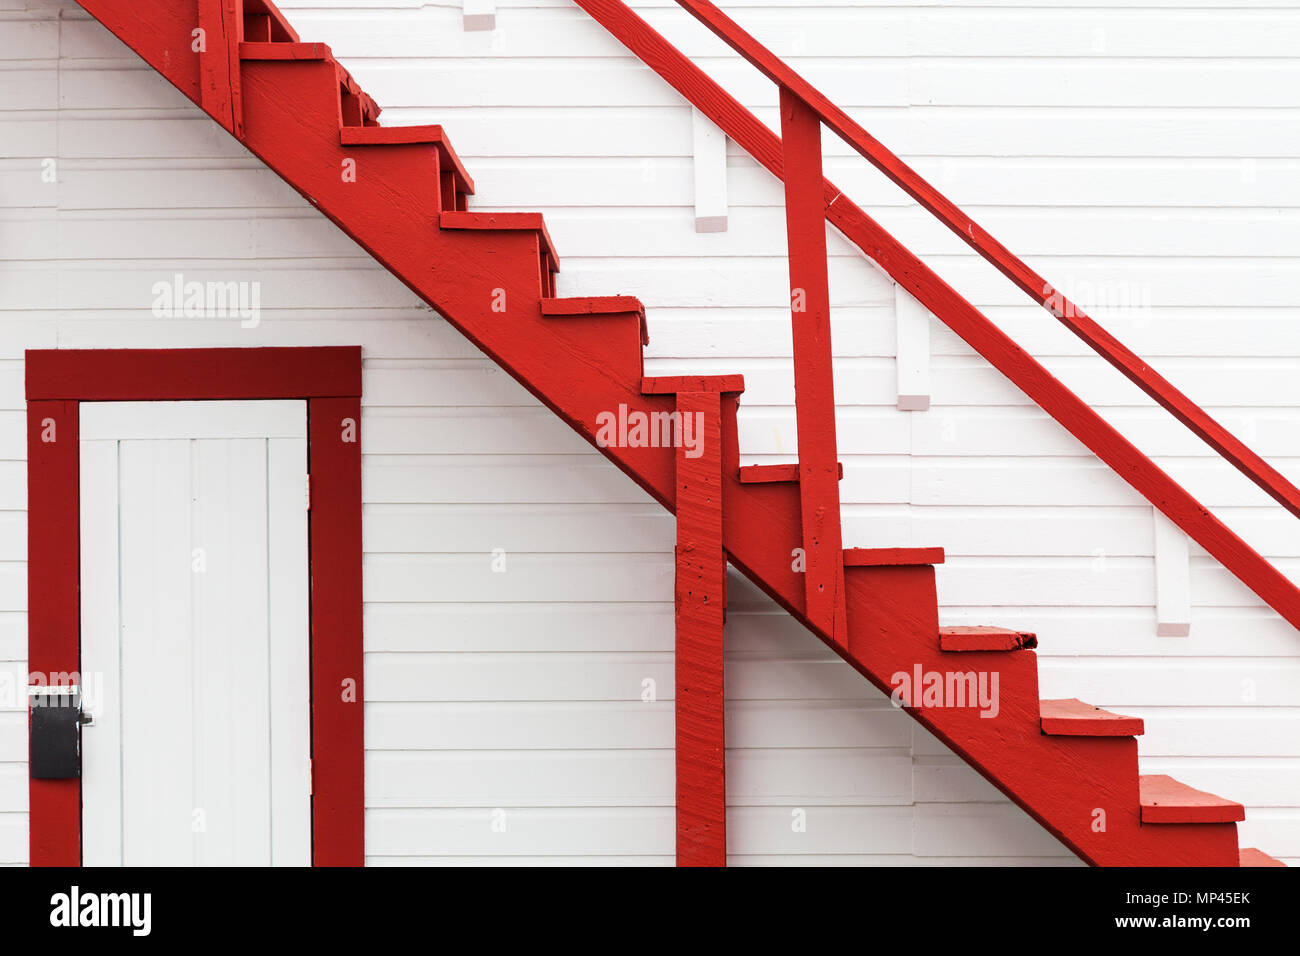 Image abstraite d'un escalier rouge contre un mur blanc Banque D'Images